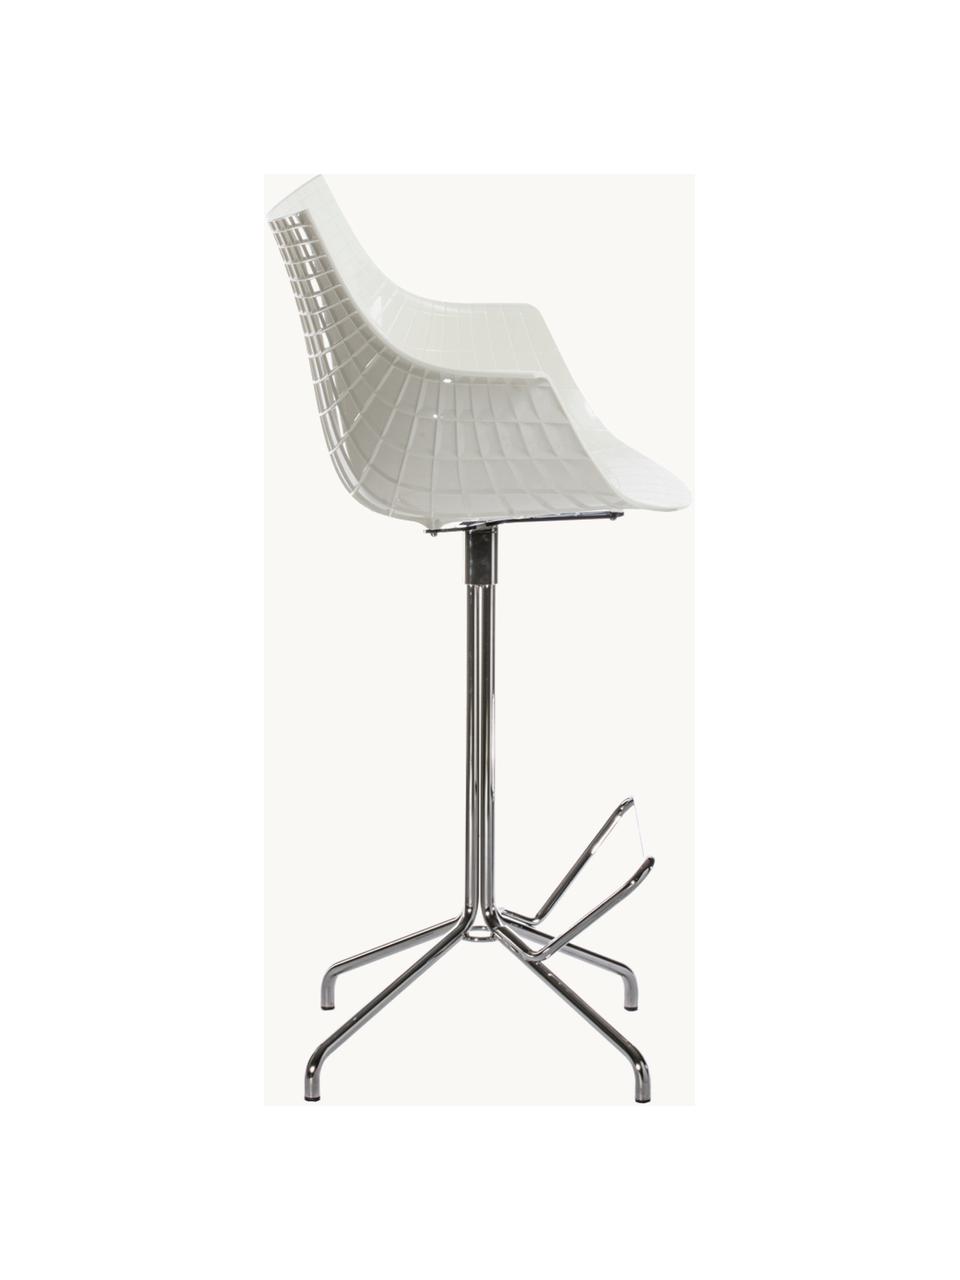 Drehbarer Kunststoff-Thekenstuhl Meridiana, Sitzfläche: Kunststoff, Beine: Stahl, verchromt, Off White, Silberfarben, B 55 x H 107 cm